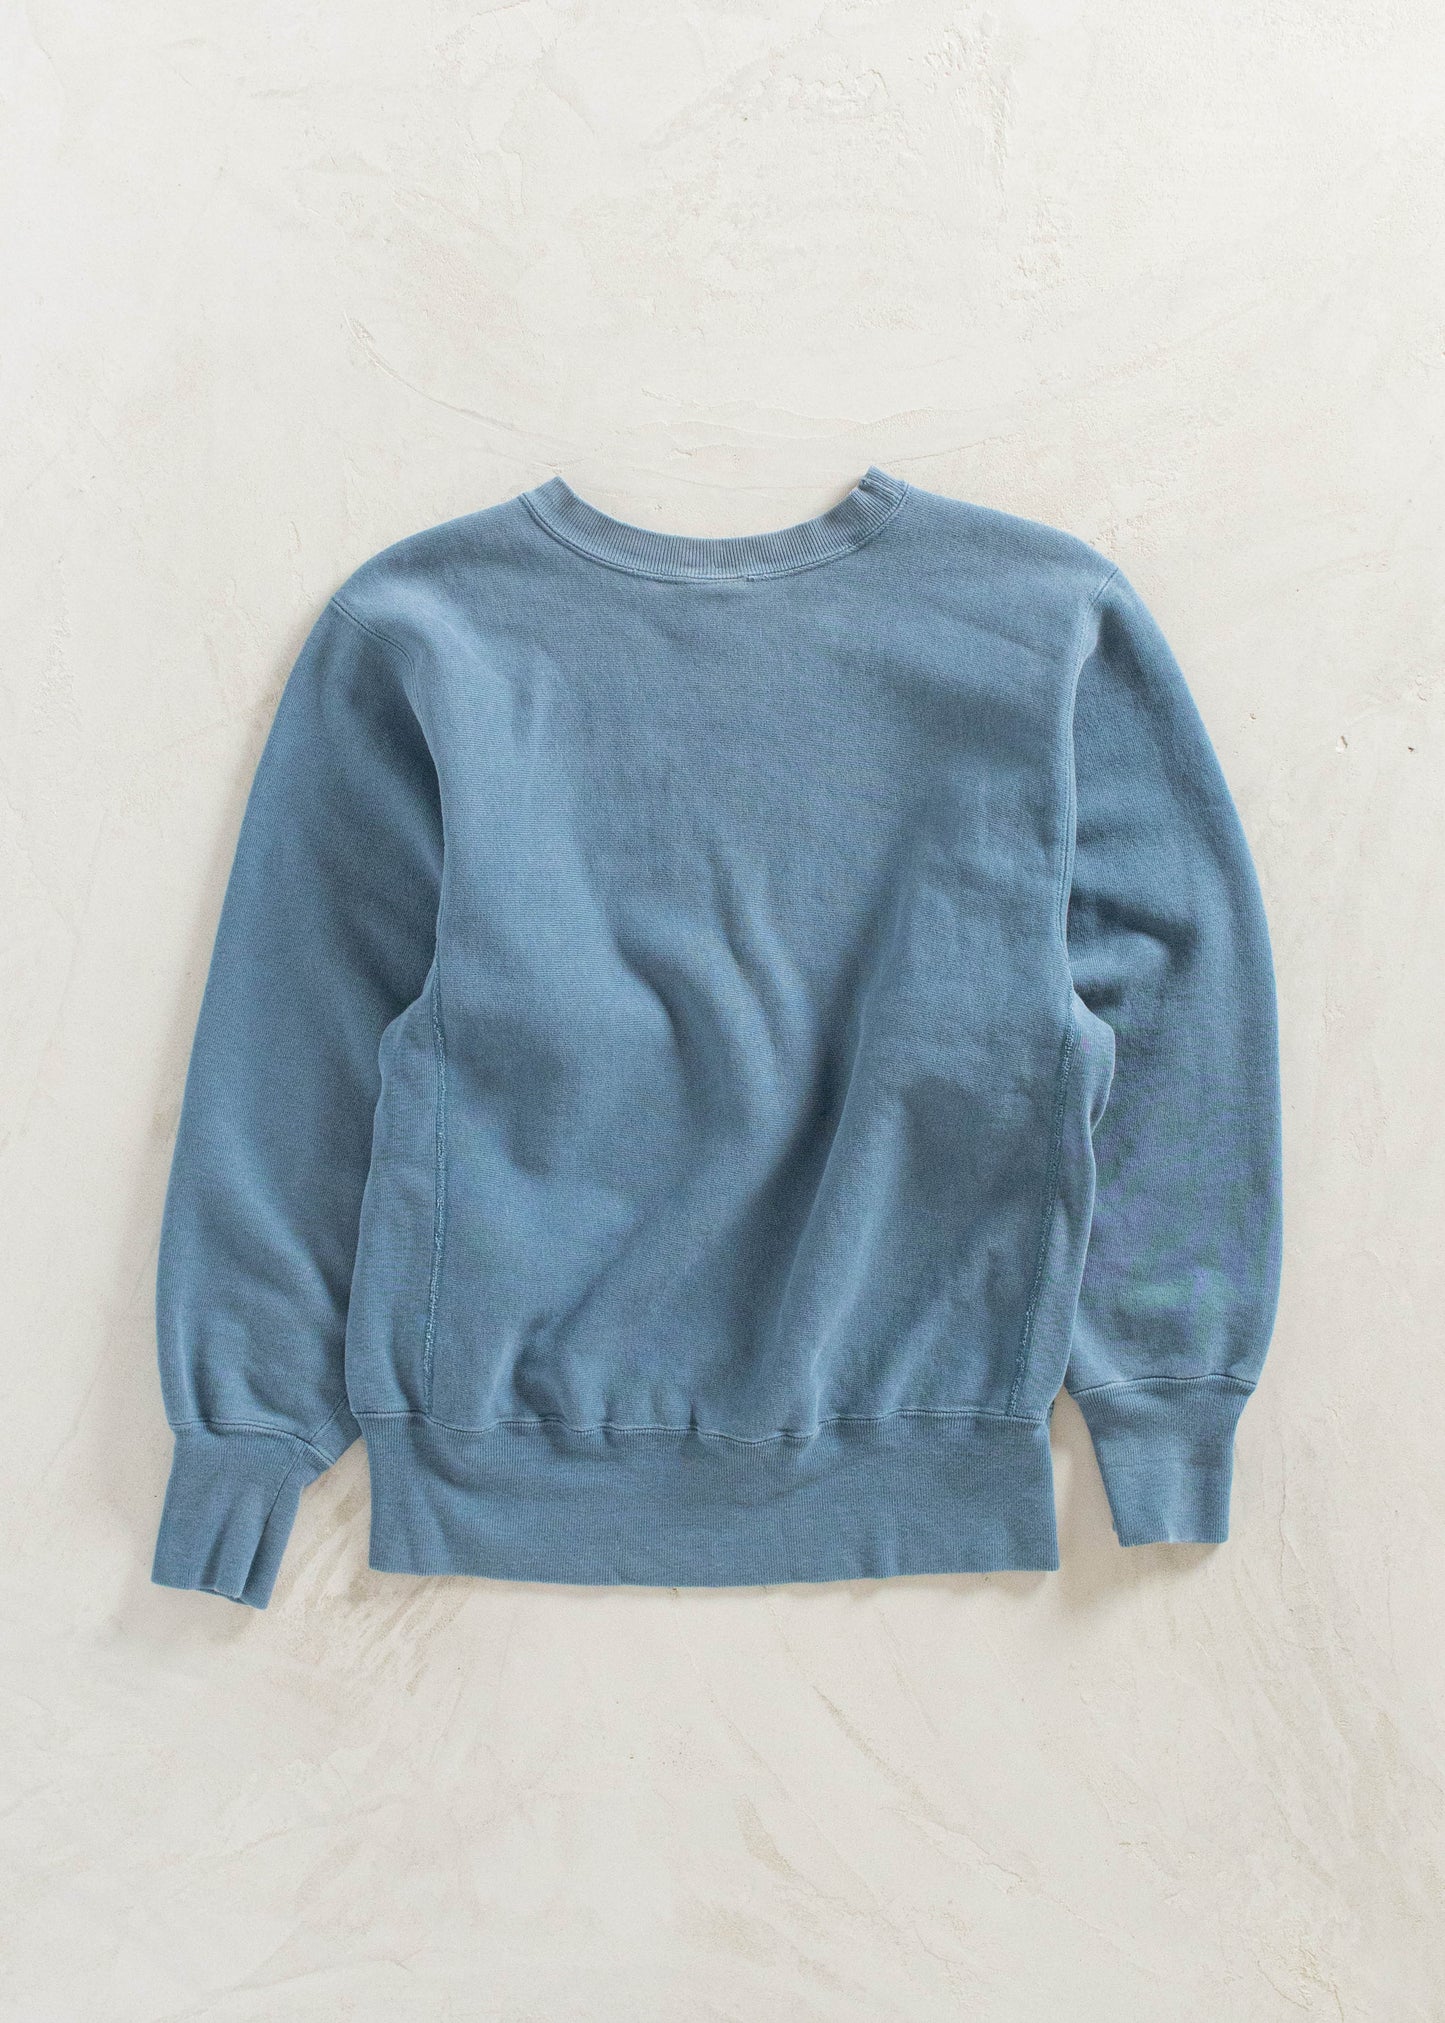 Vintage 1990s Champion Reverse Weave Blue Sweatshirt Size S/M